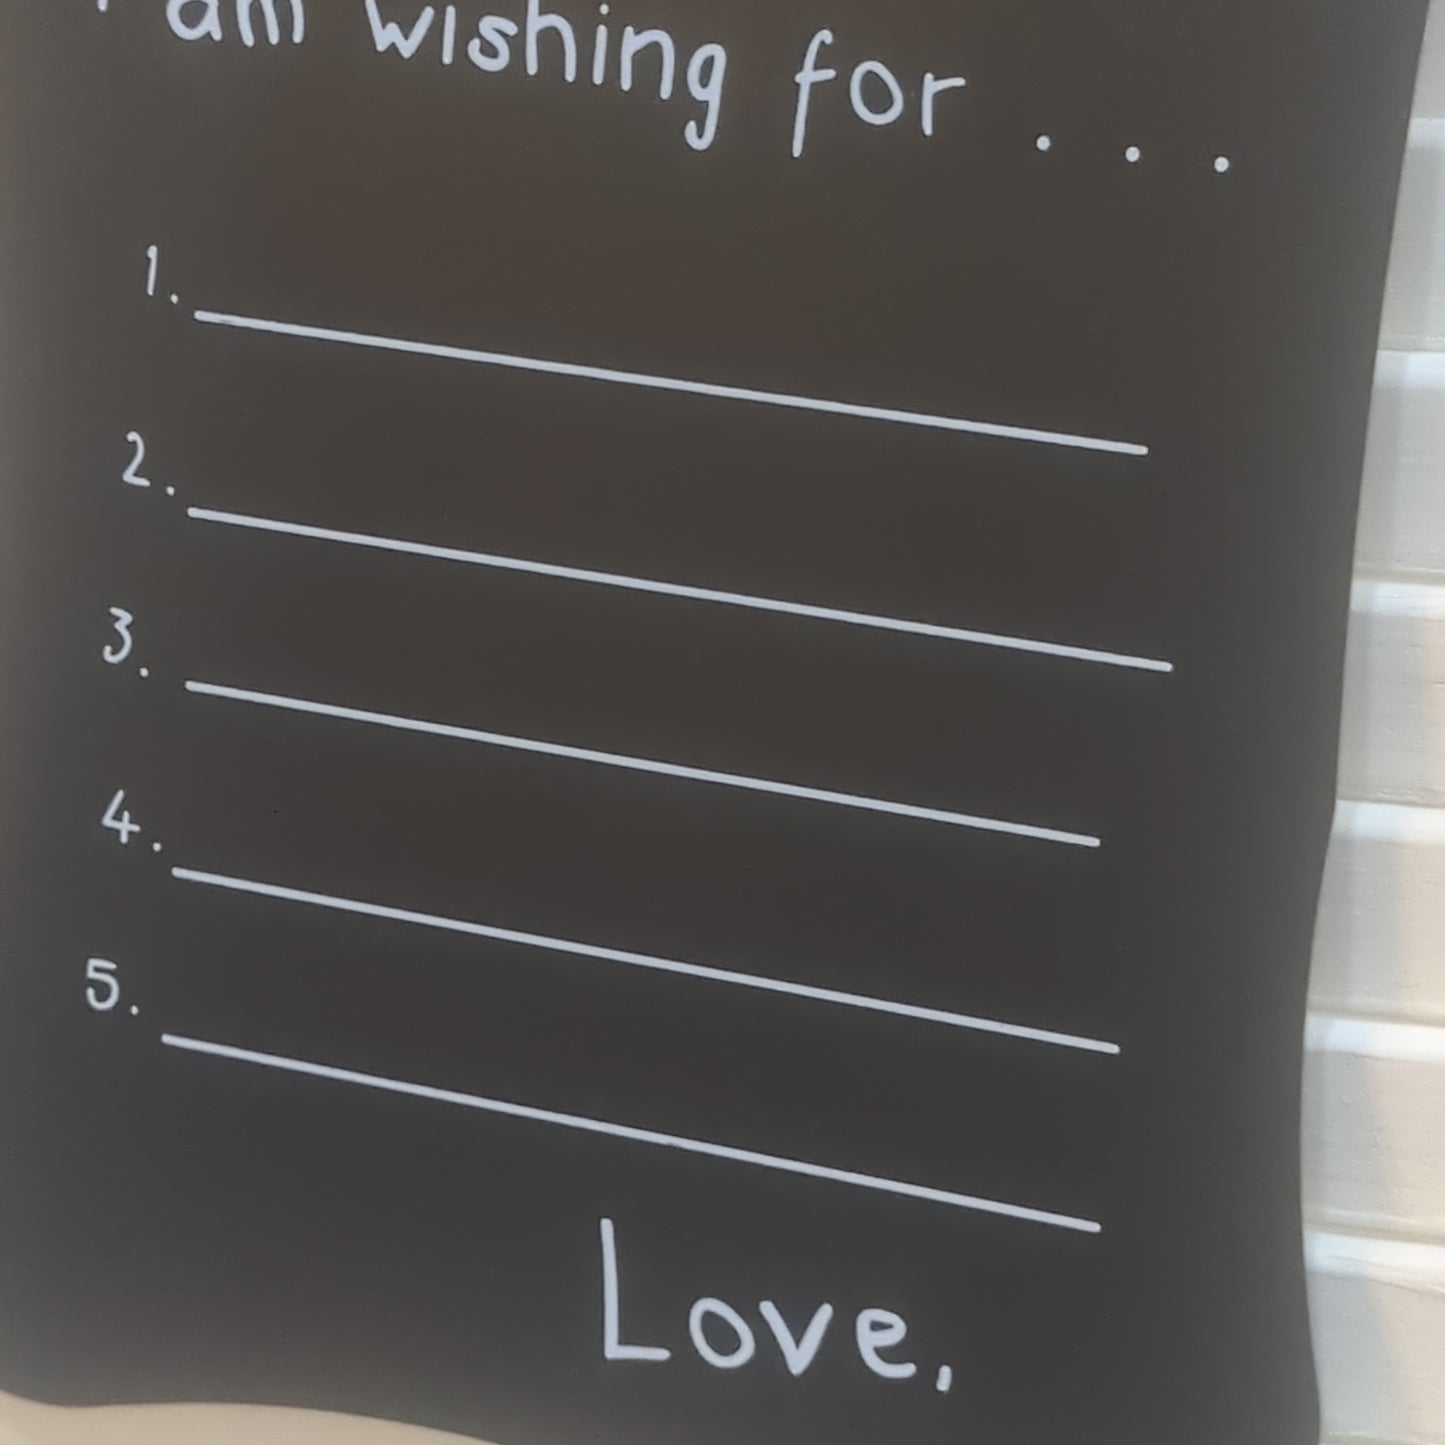 Santa Wish List chalkboard